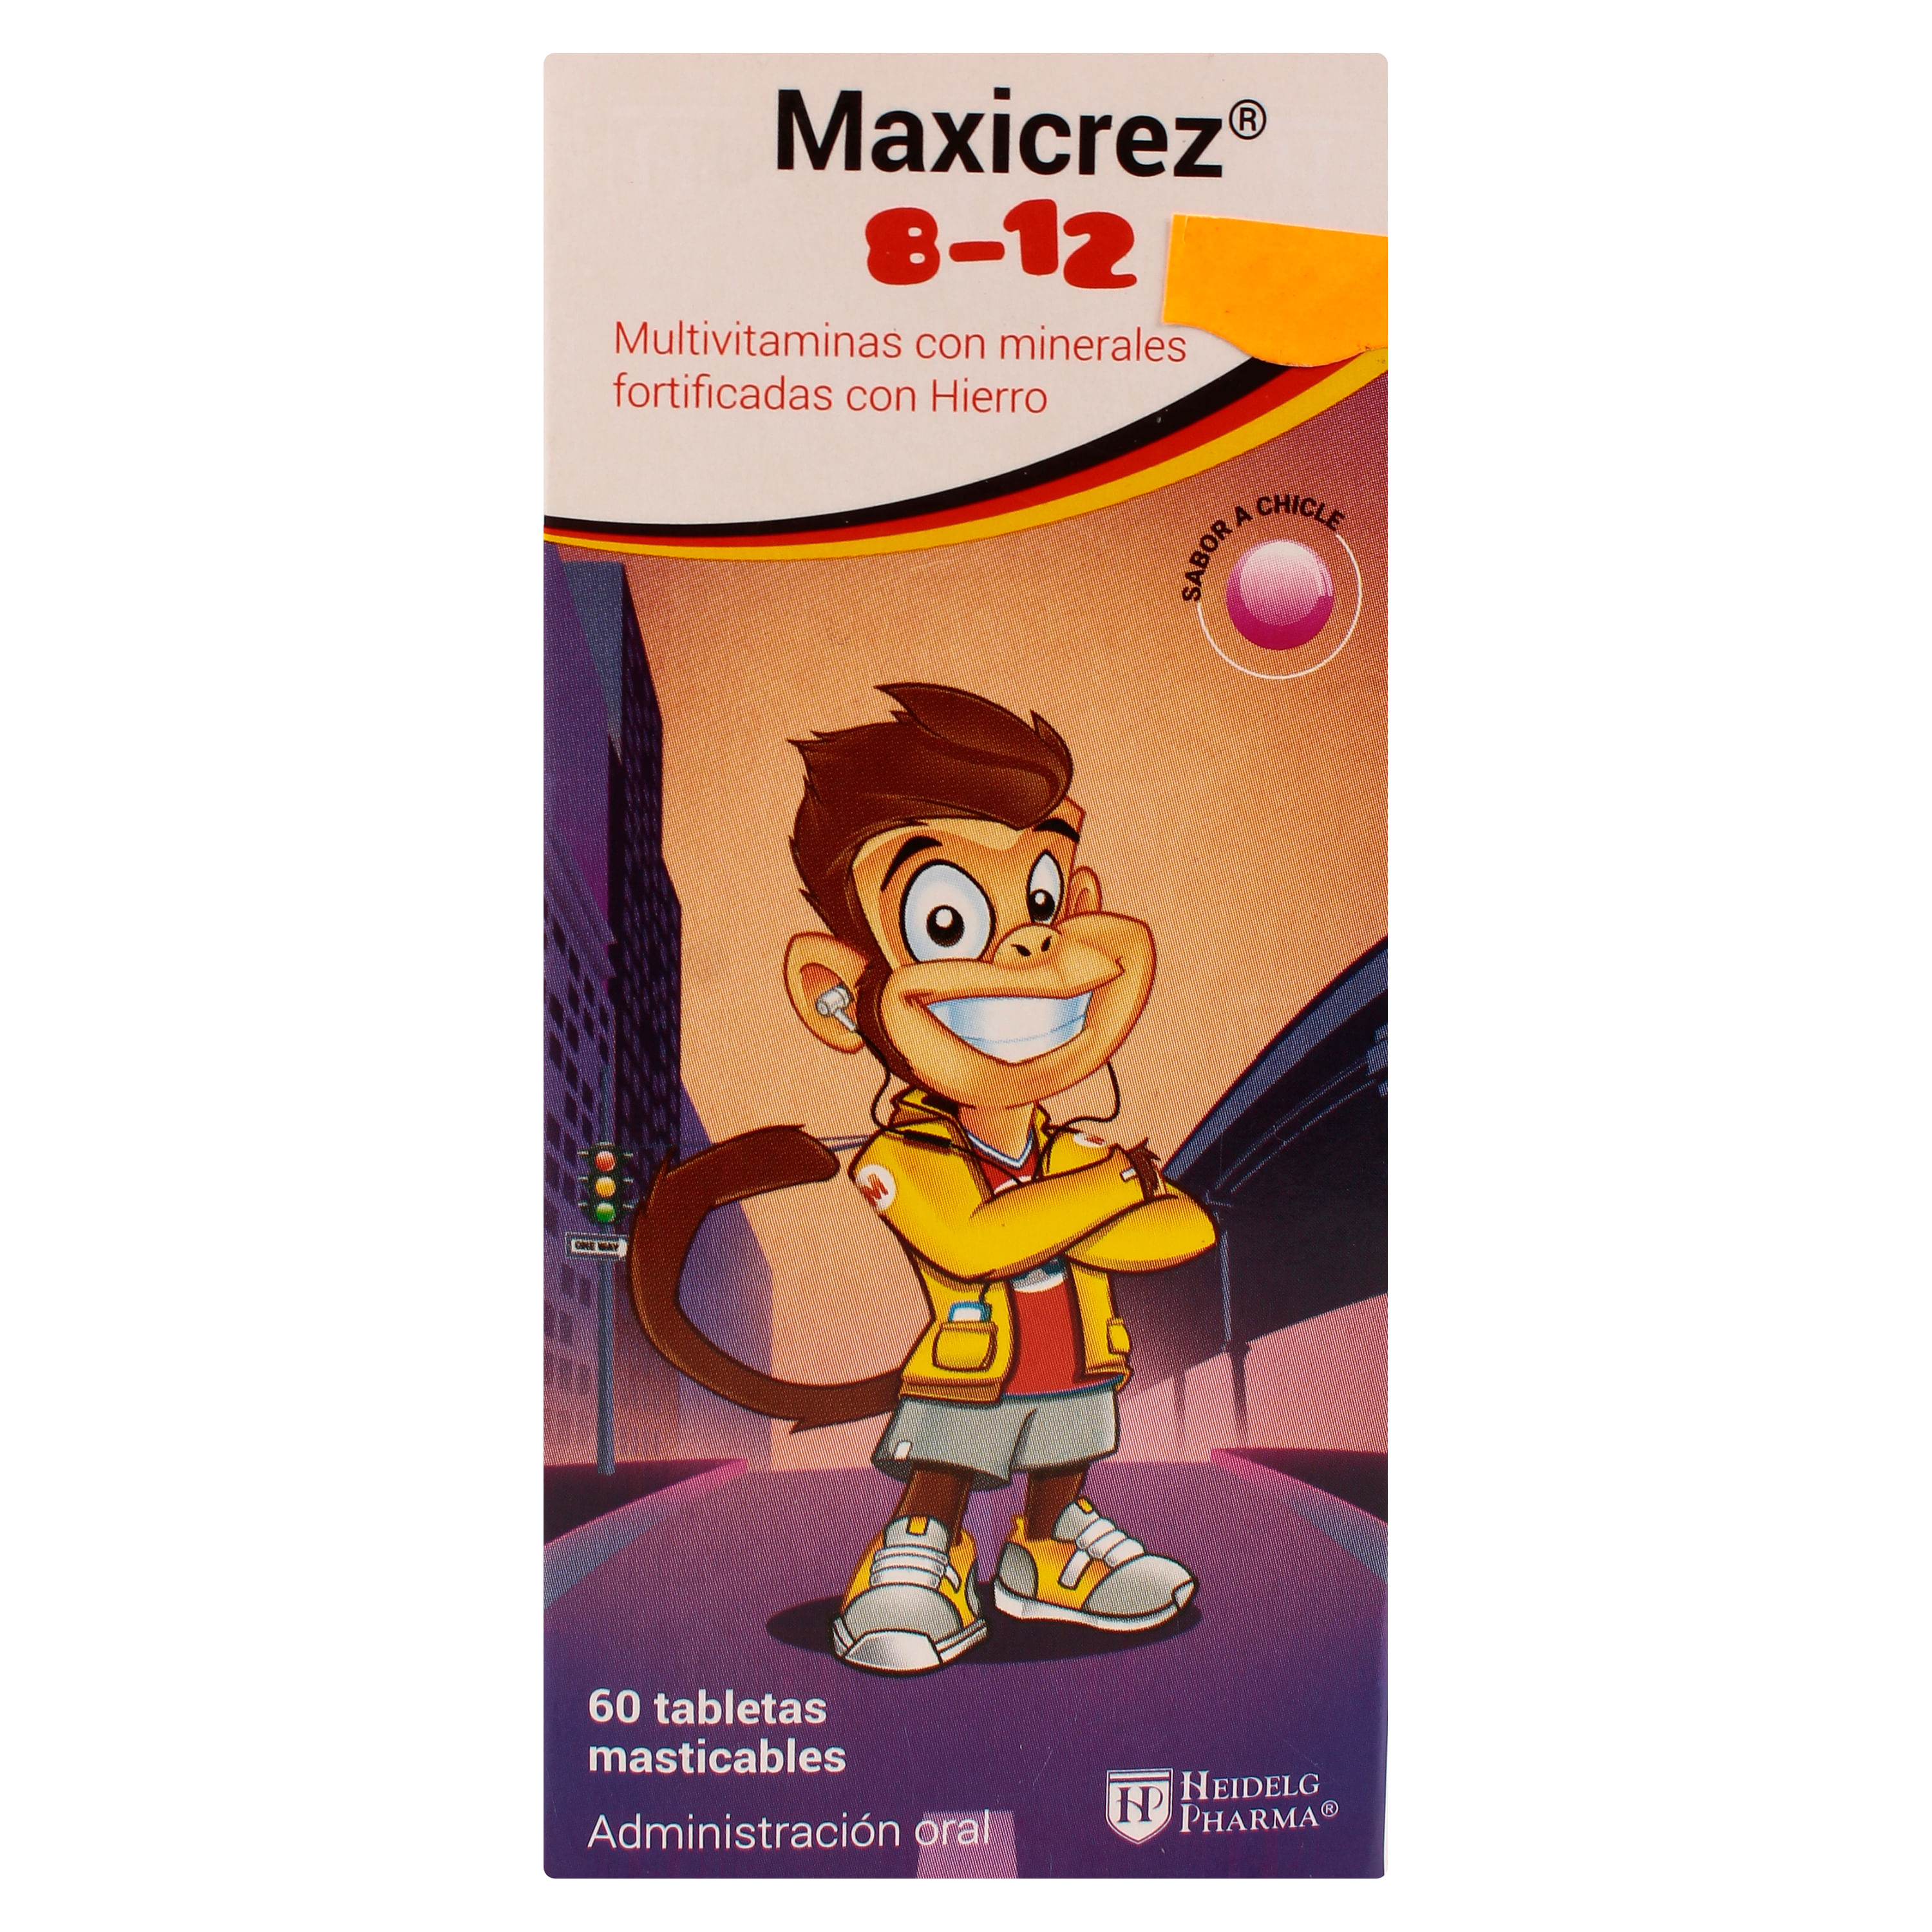 Multivitaminico-Maxicrez-8-12-Una-Caja-Multivitaminico-Maxicrez-8-12-1-30177